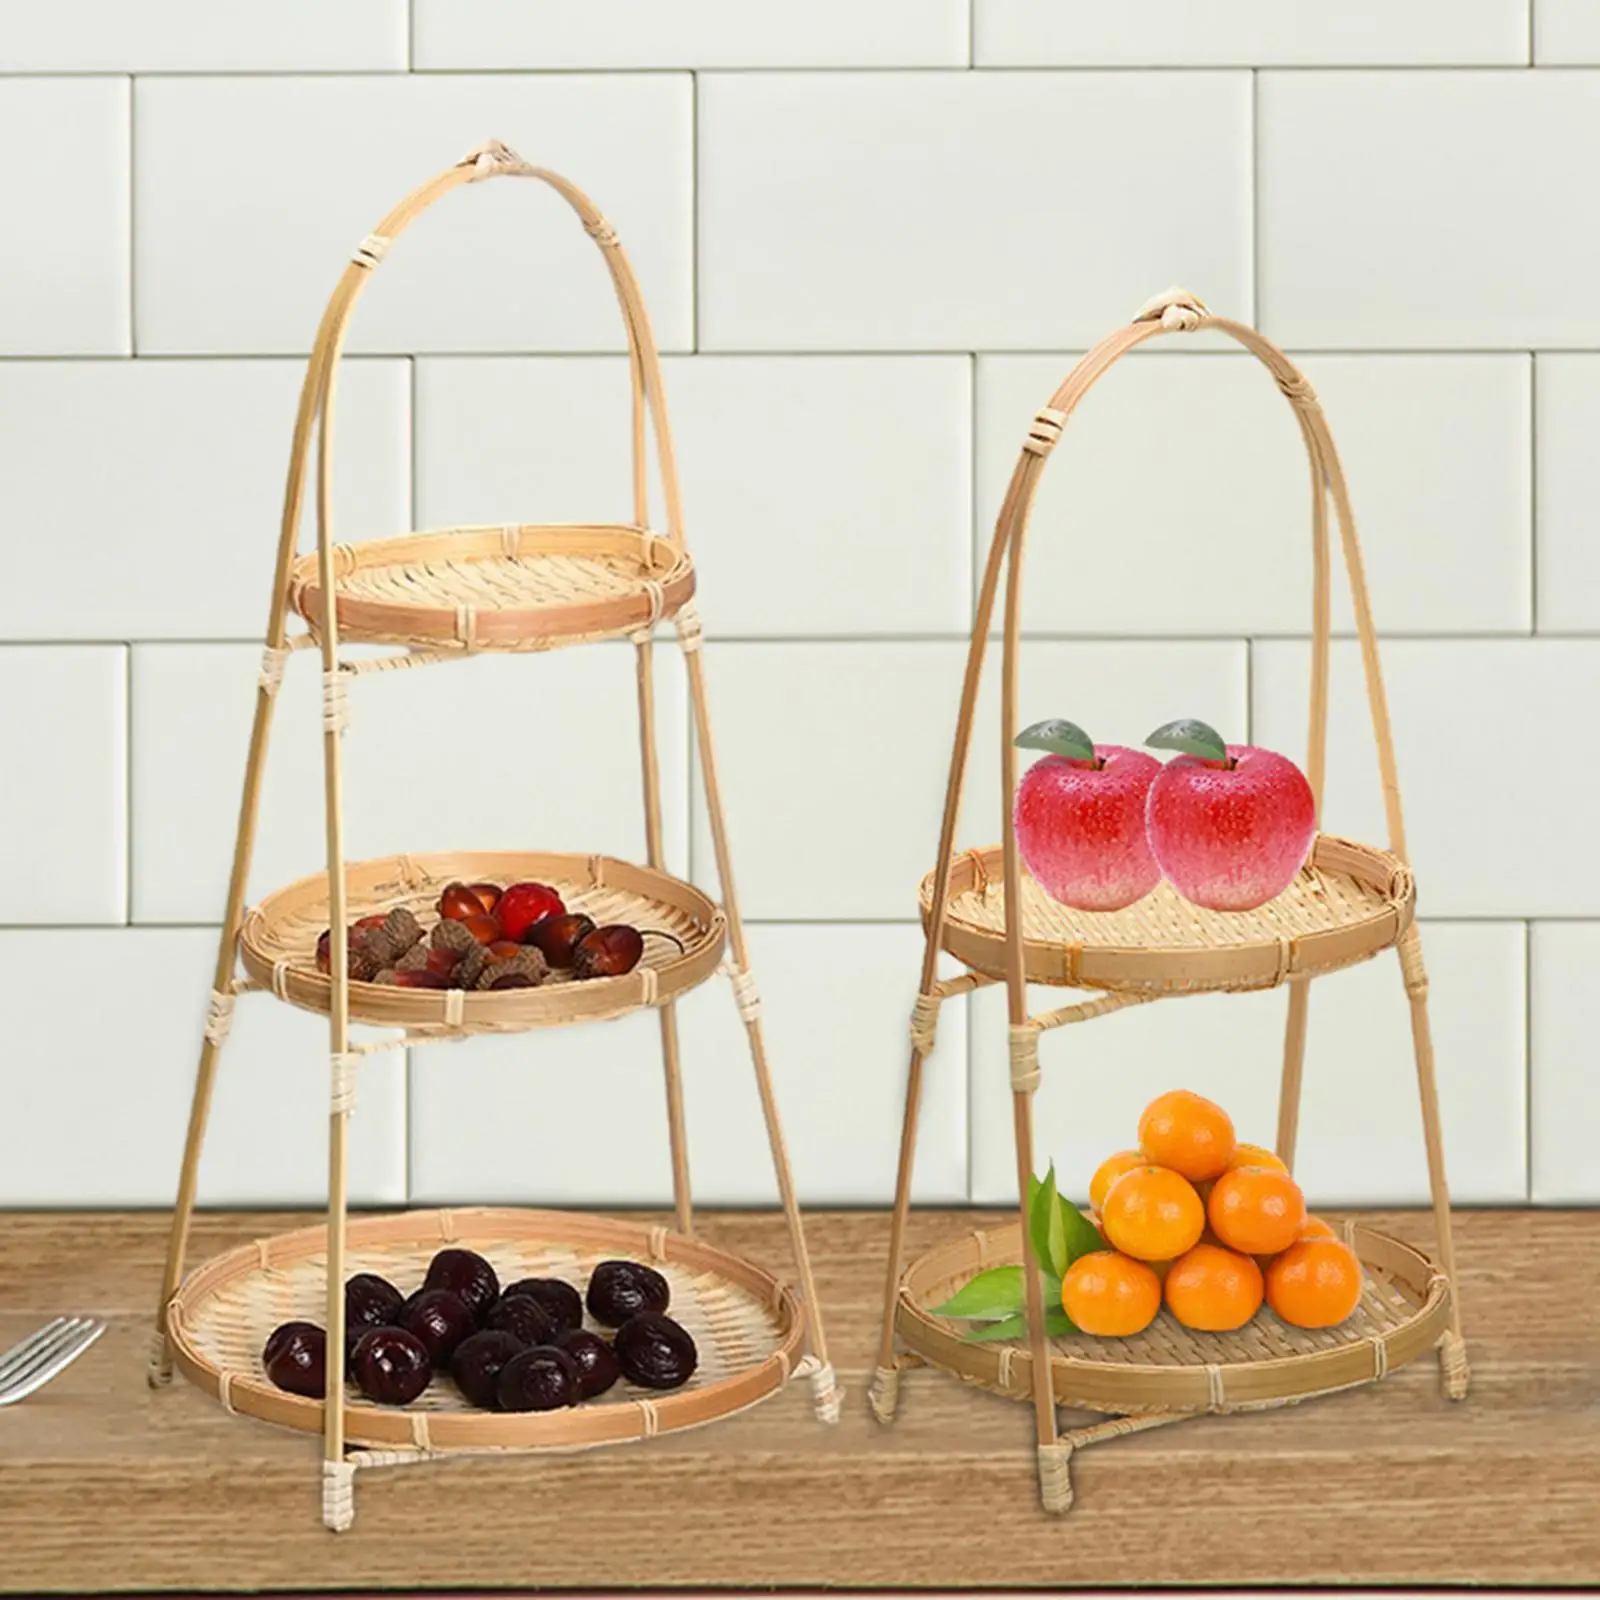 Handwoven Fruit Basket Serving Trays Fruit Bowls Rustic Decoration Bamboo Fruit Basket Food Basket for Kitchen Table Cafe